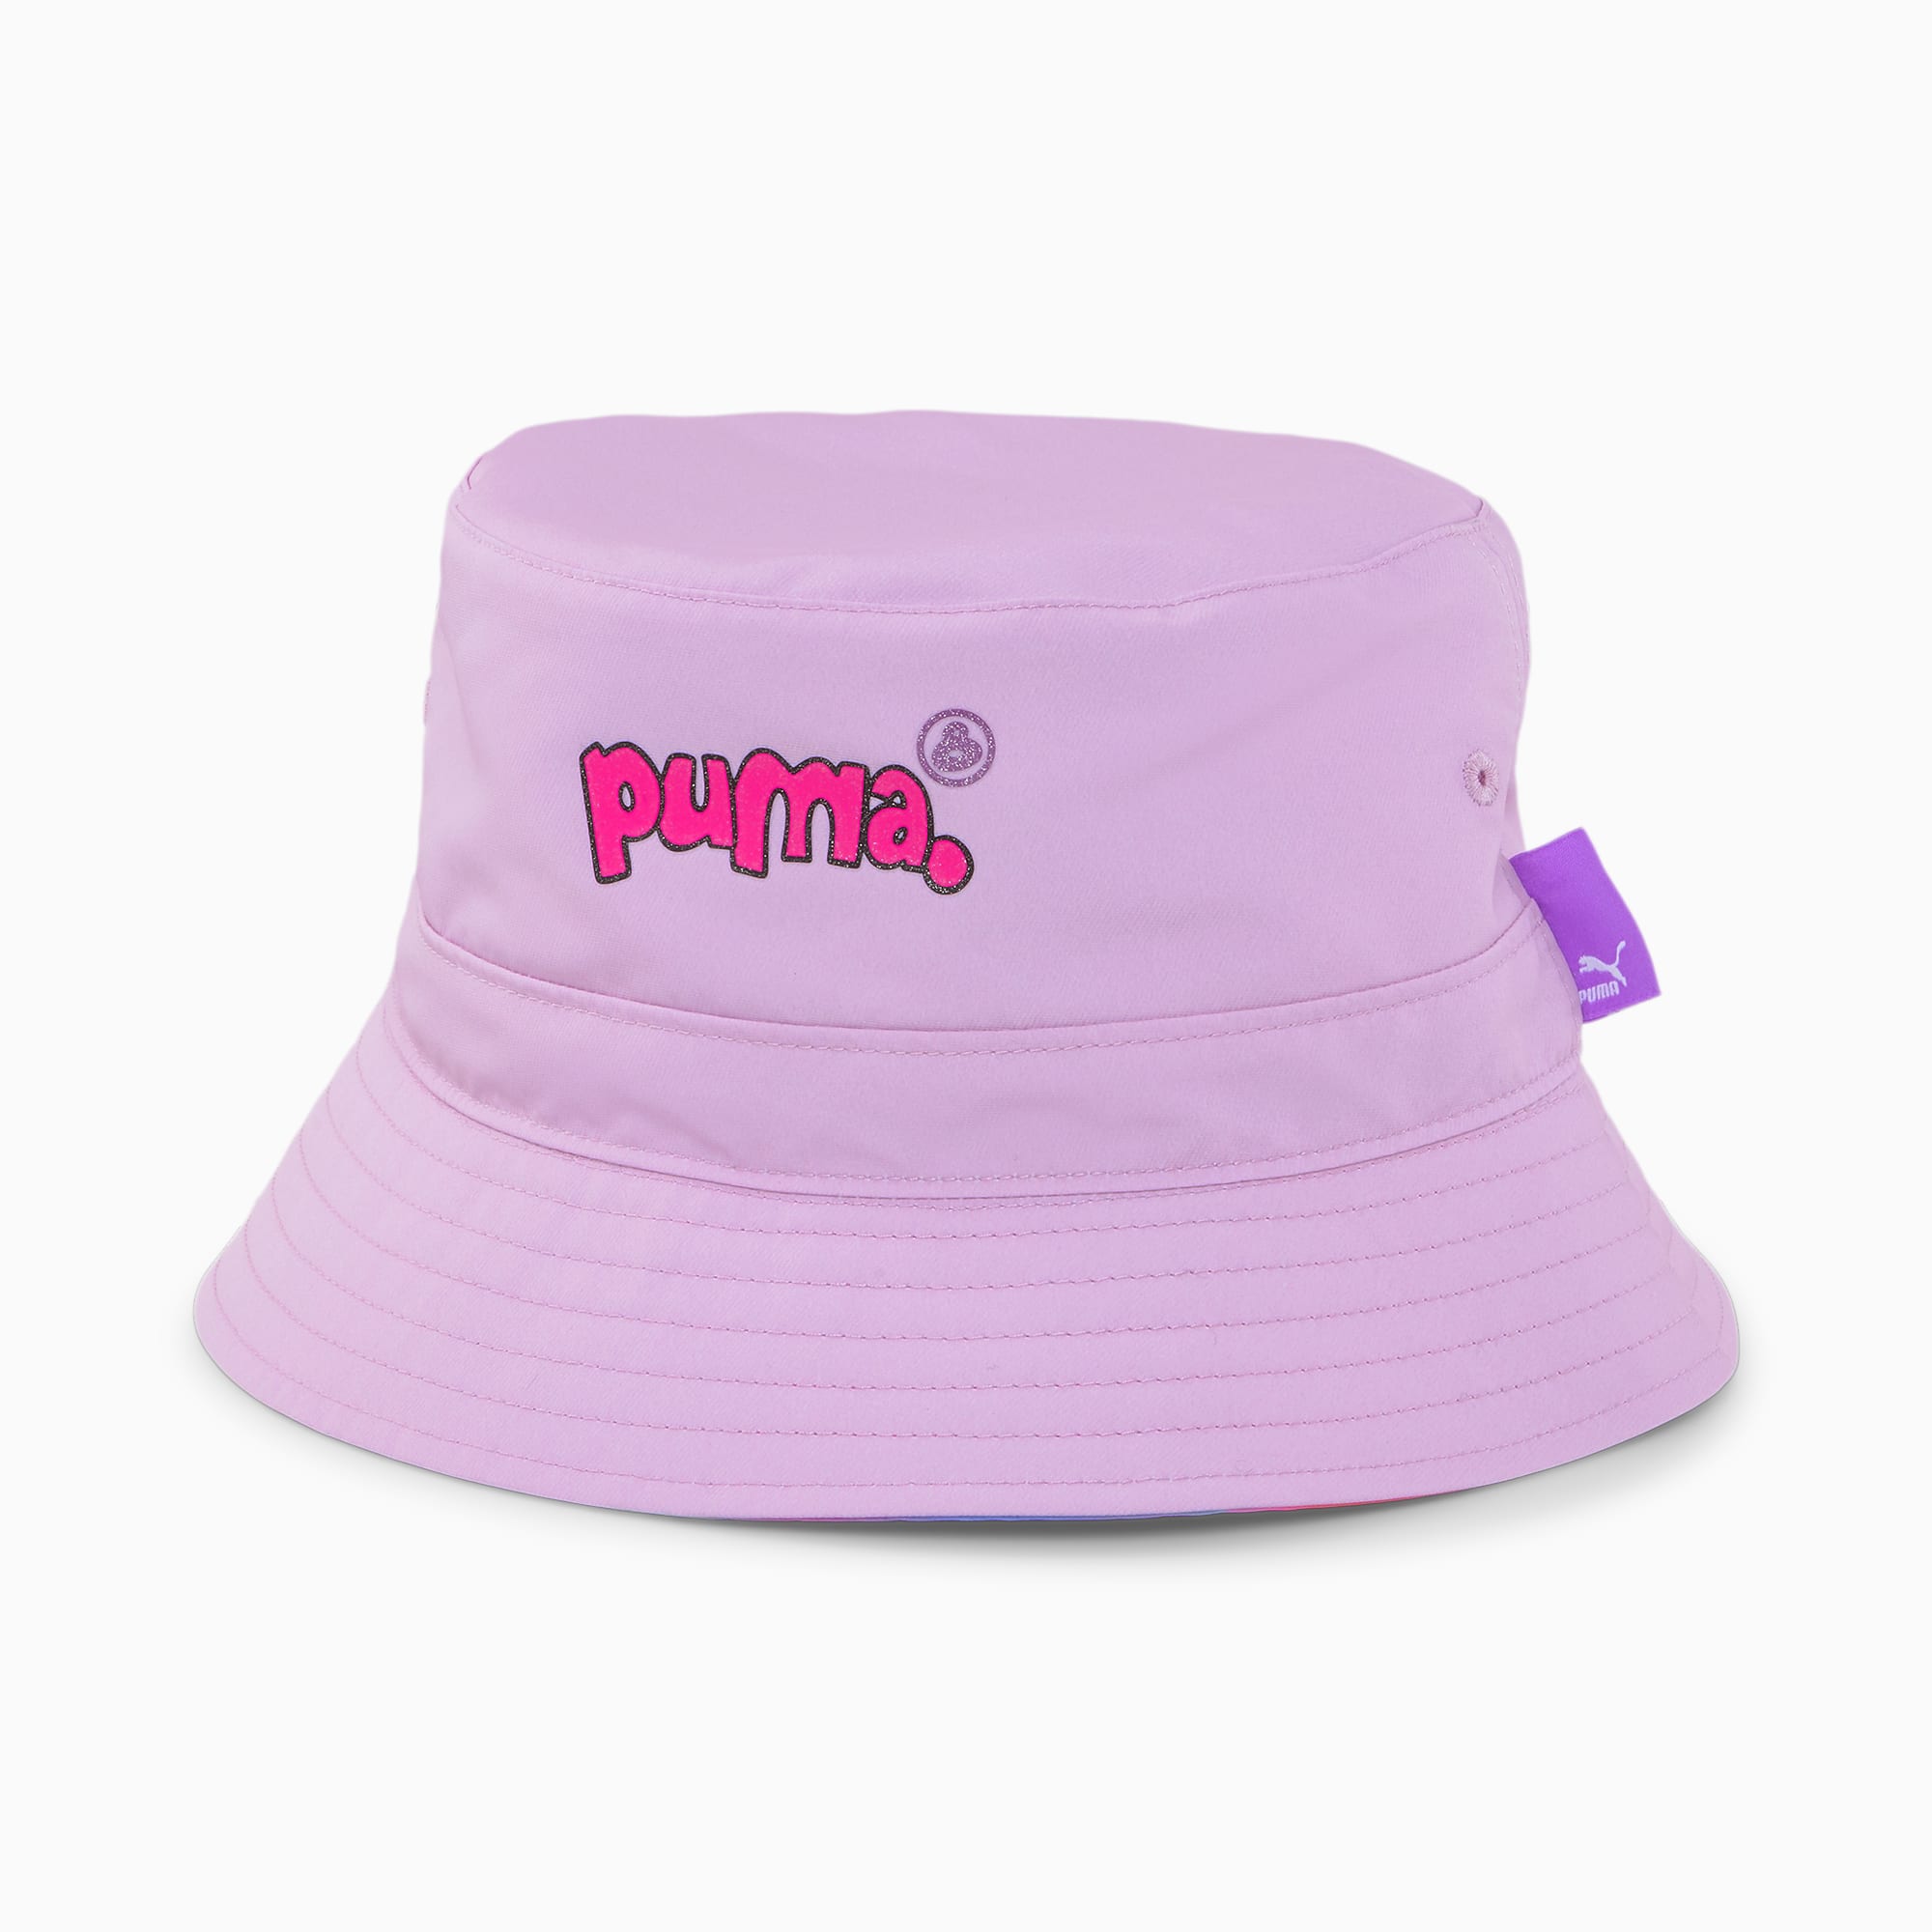 PUMA X 8ENJAMIN Bucket Hat Für Damen, Rosa, Größe: L/XL, Accessoires